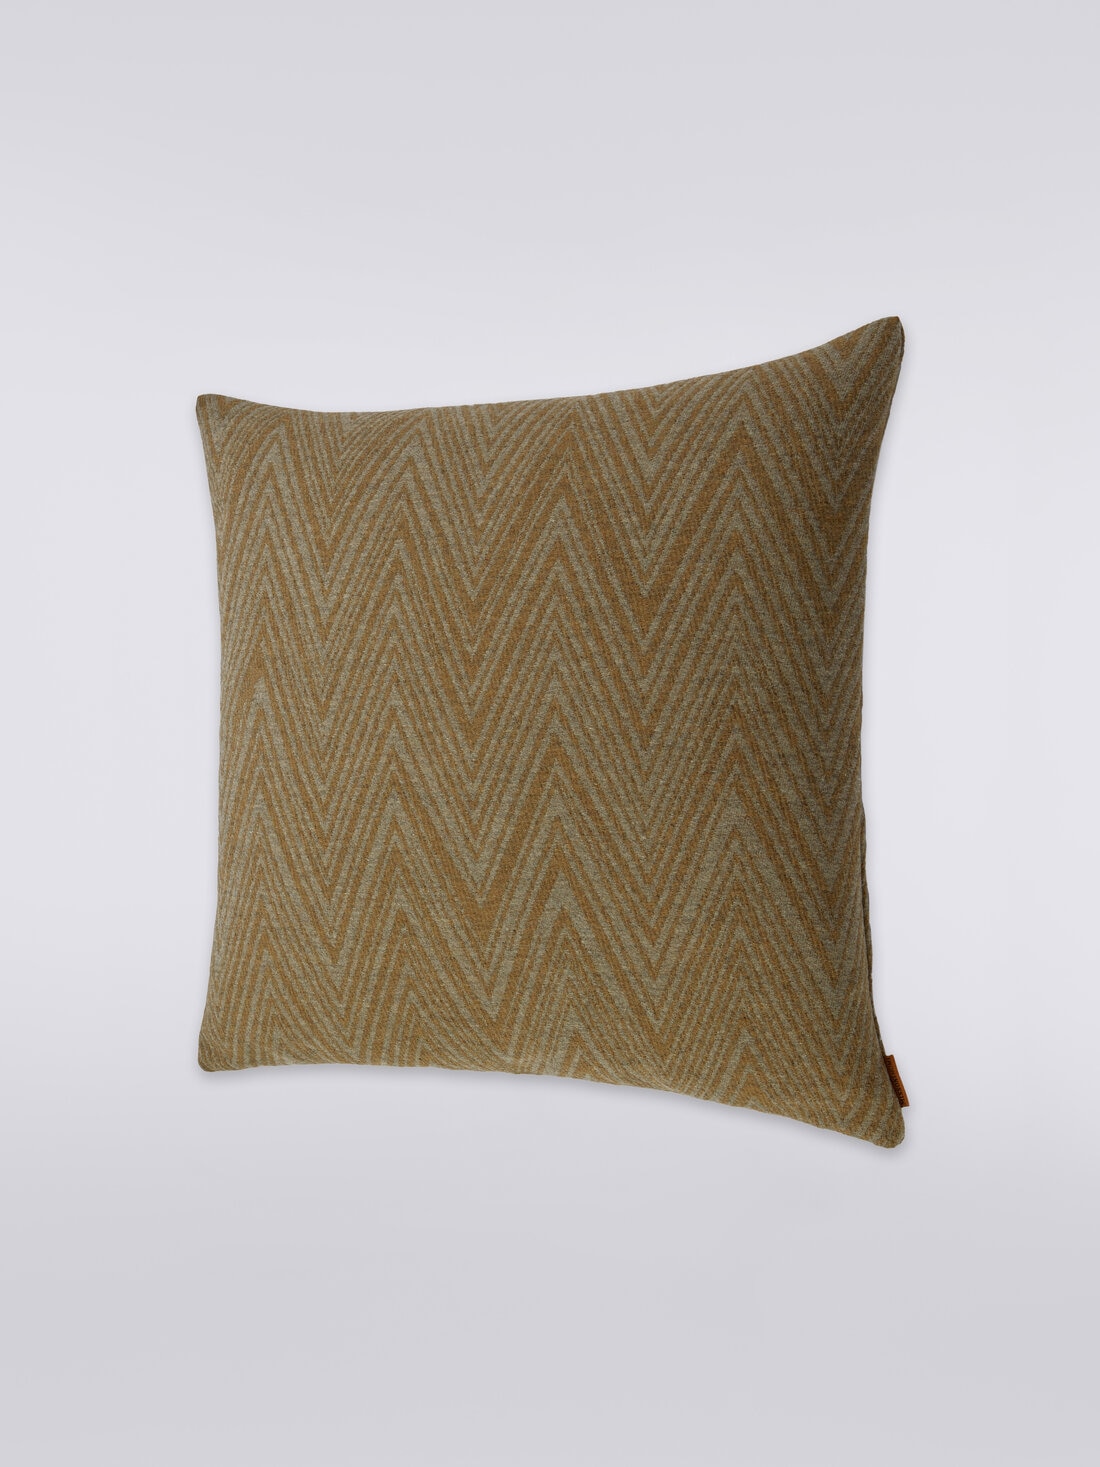 Bridgetown cushion 40x40 cm, Multicoloured  - 8051275582137 - 1